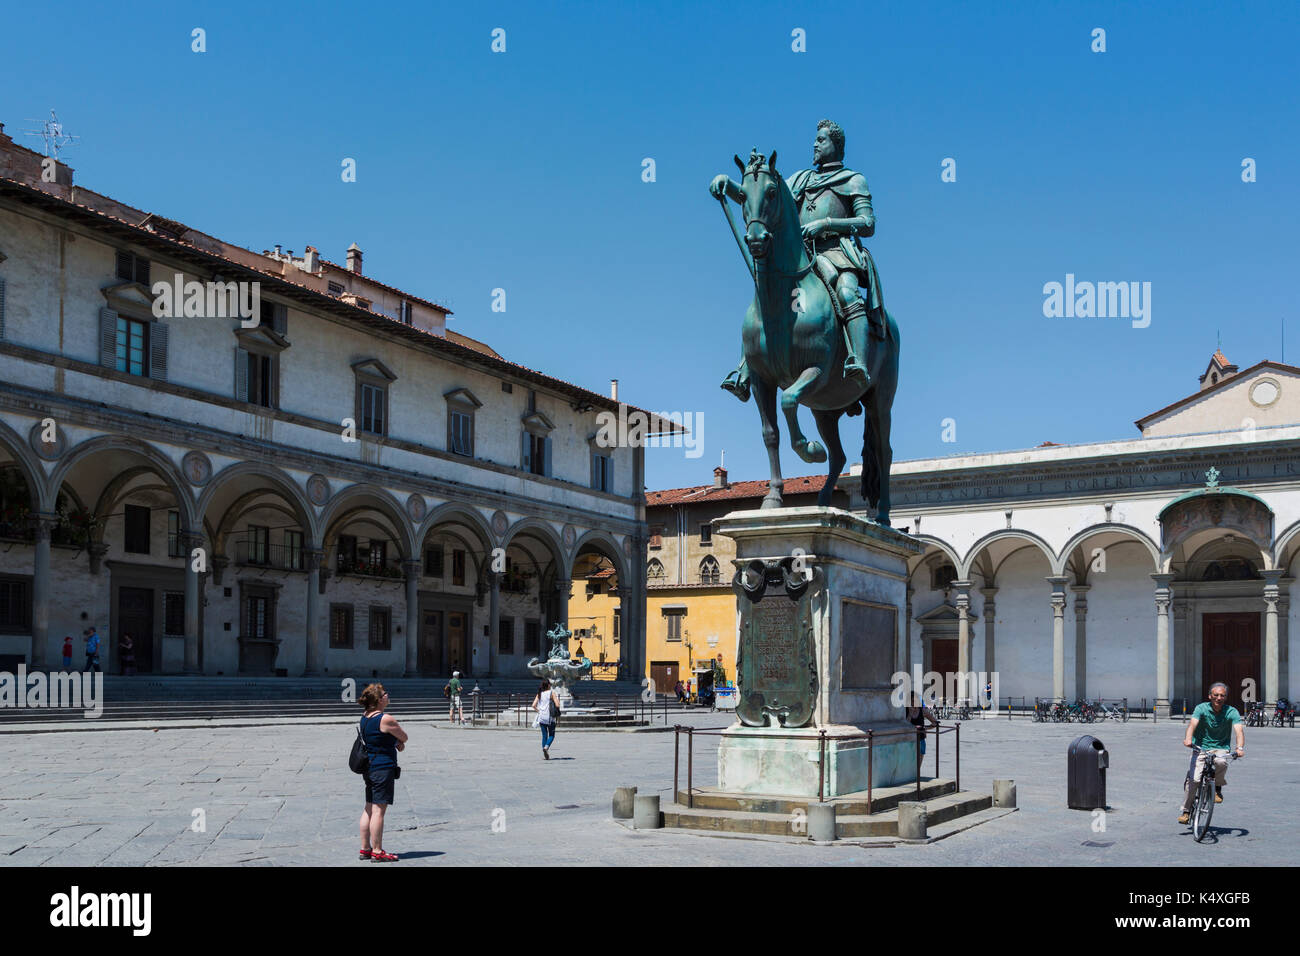 Firenze, provincia di Firenze, Toscana, Italia. piazza della santissima annunziata. statua di Ferdinando I de' Medici, granduca di Toscana, 1549 - 16 Foto Stock